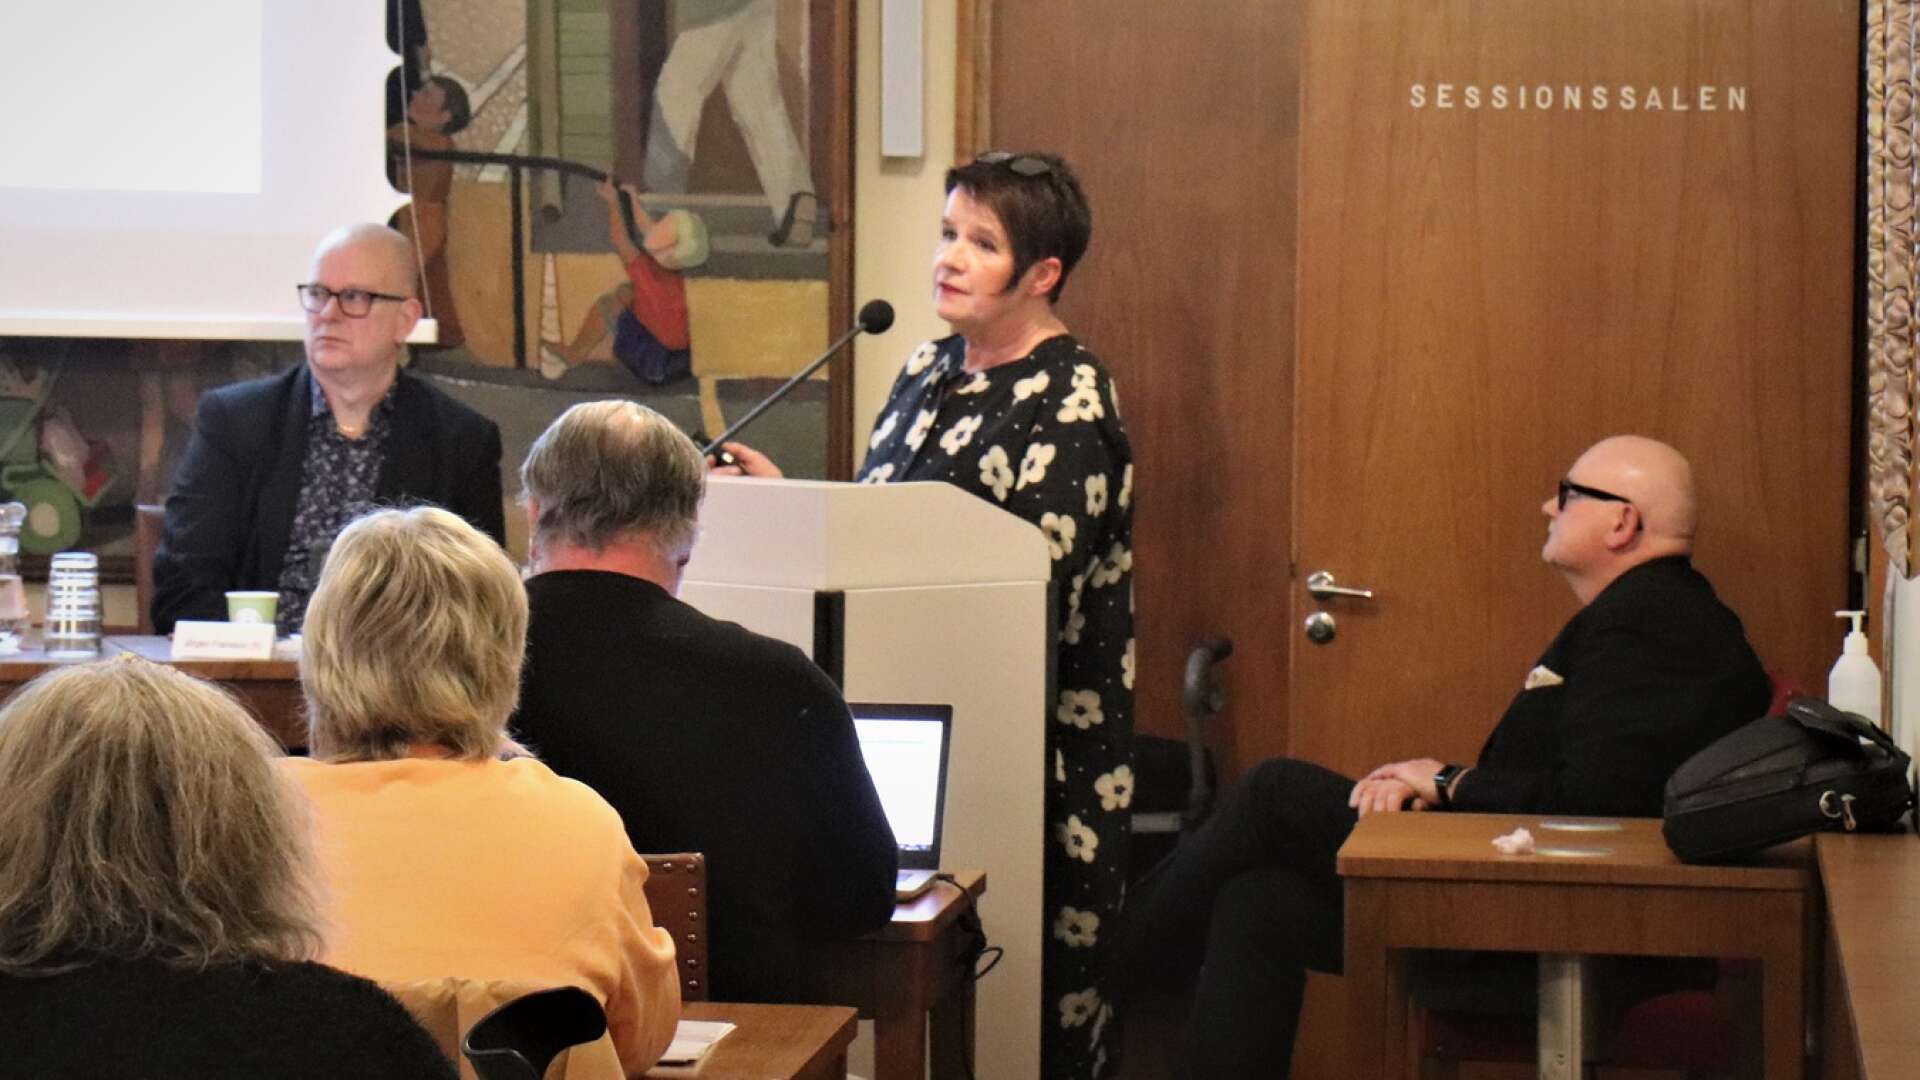 Kommunalrådet Catrin Hulmarker (M) föredrog alliansens budget, som innebär skattehöjning med 43 öre. Kommunfullmäktiges vide ordförande Jörgen Fransson (S) och ordförande Michael Kihlström (KD) lyssnade och begrundade.